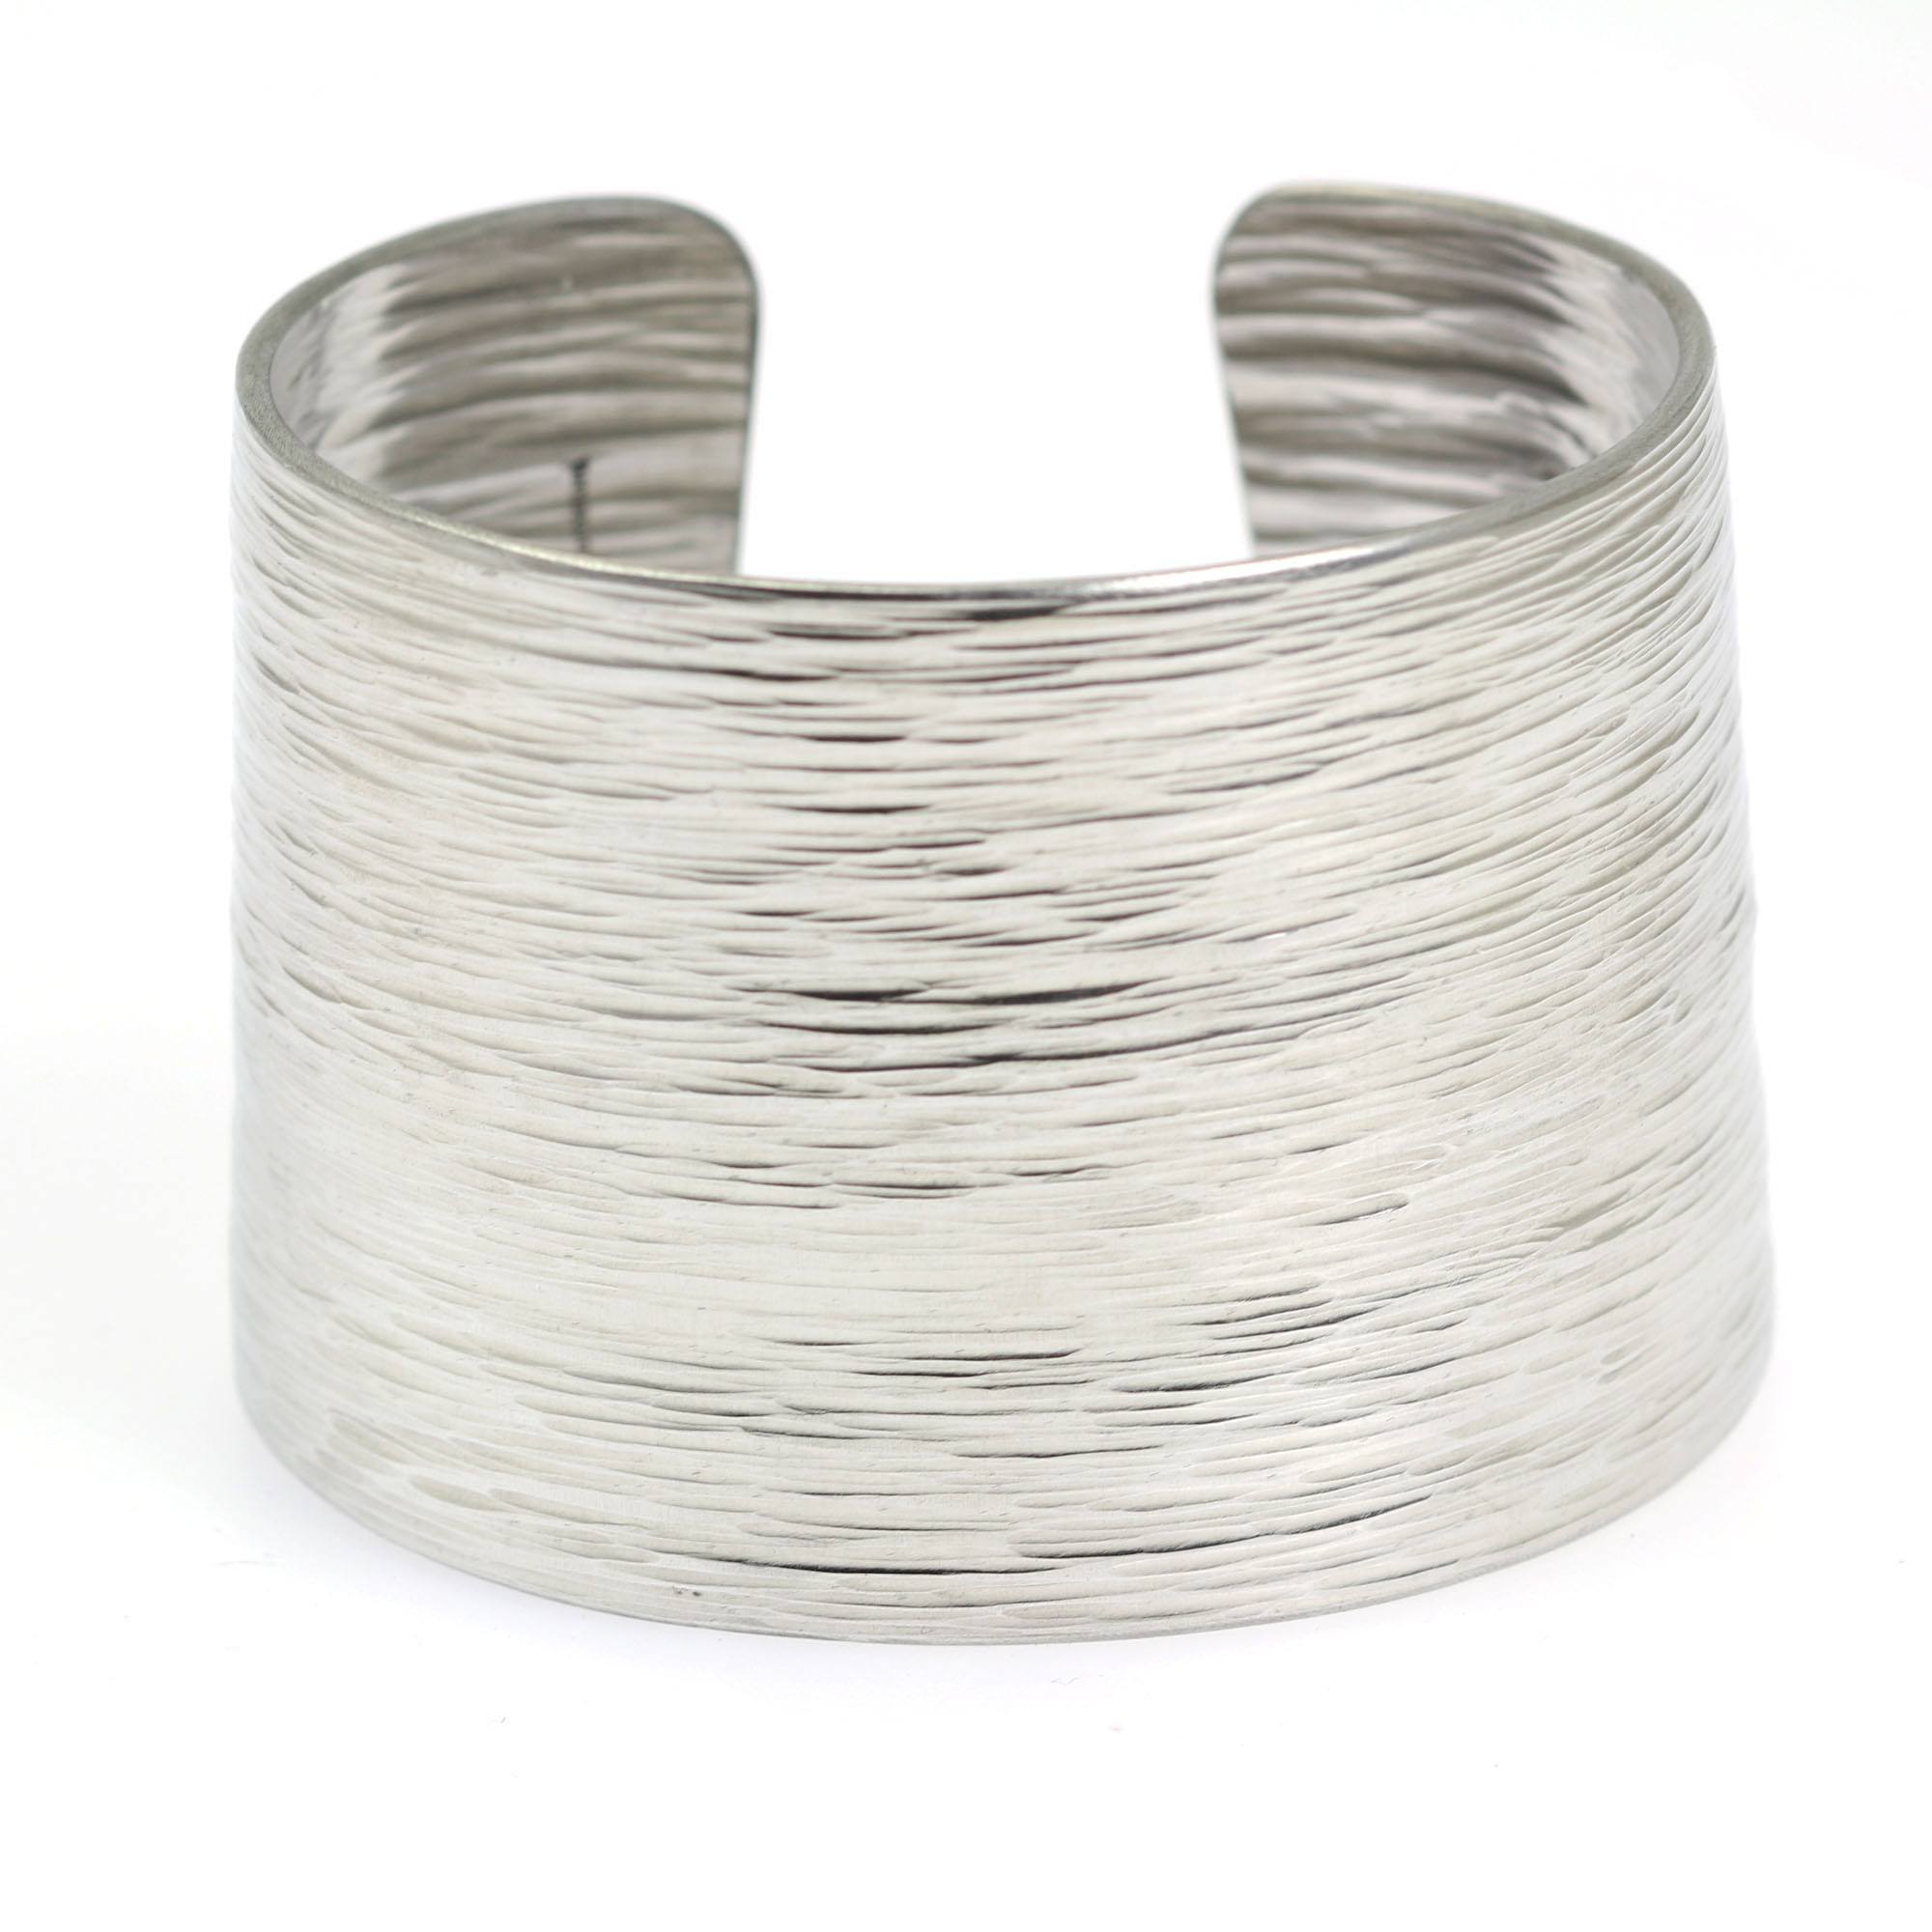 Detail - Aluminum Bark Cuff - Wide Silver Tone Cuff Bracelet